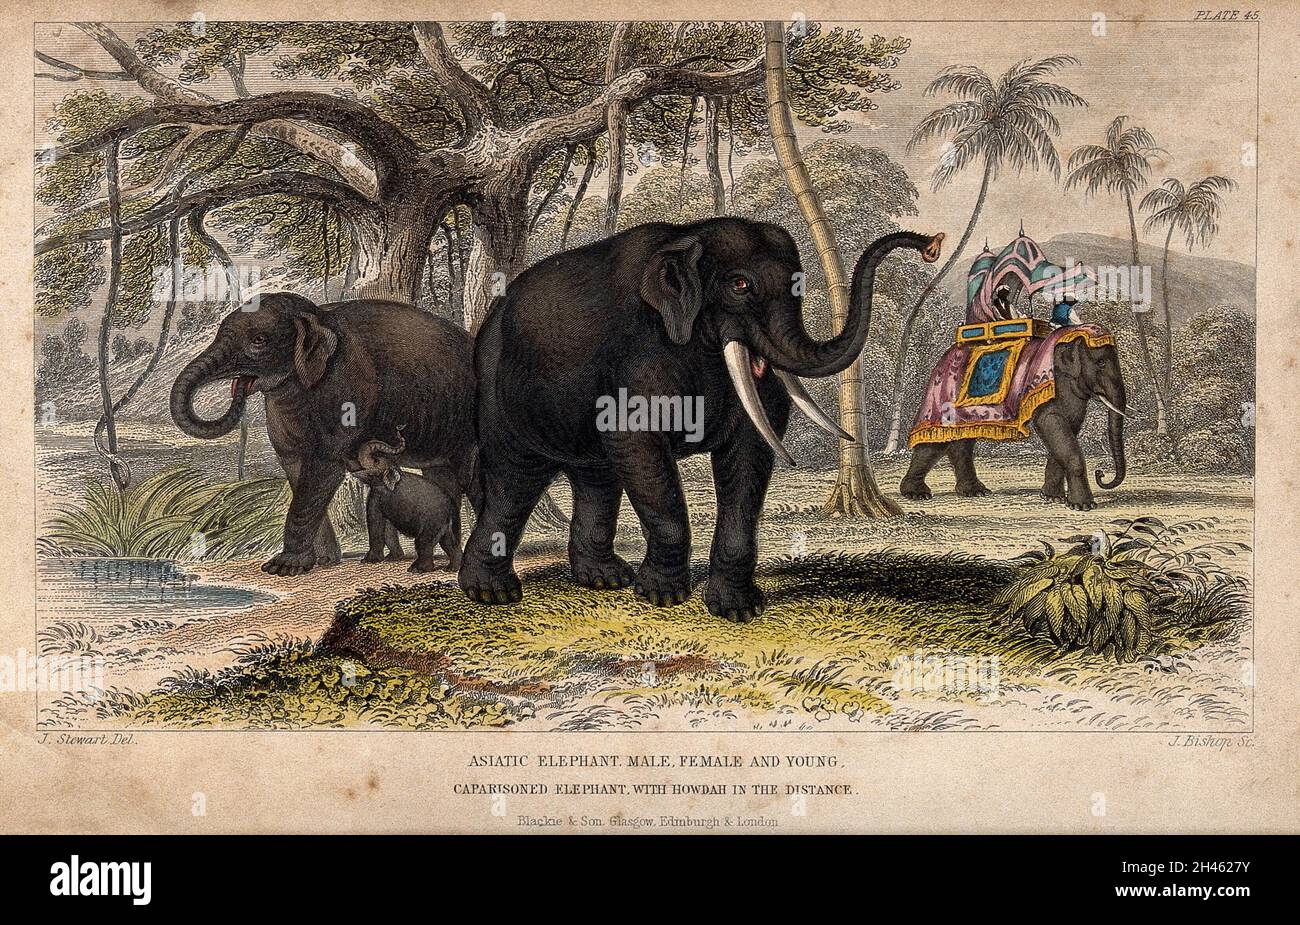 Une femelle et un mâle éléphant asiatique avec leur jeune et un éléphant en caparie avec un howdah au loin.Gravure colorée par J. Bishop d'après J. Stewart. Banque D'Images